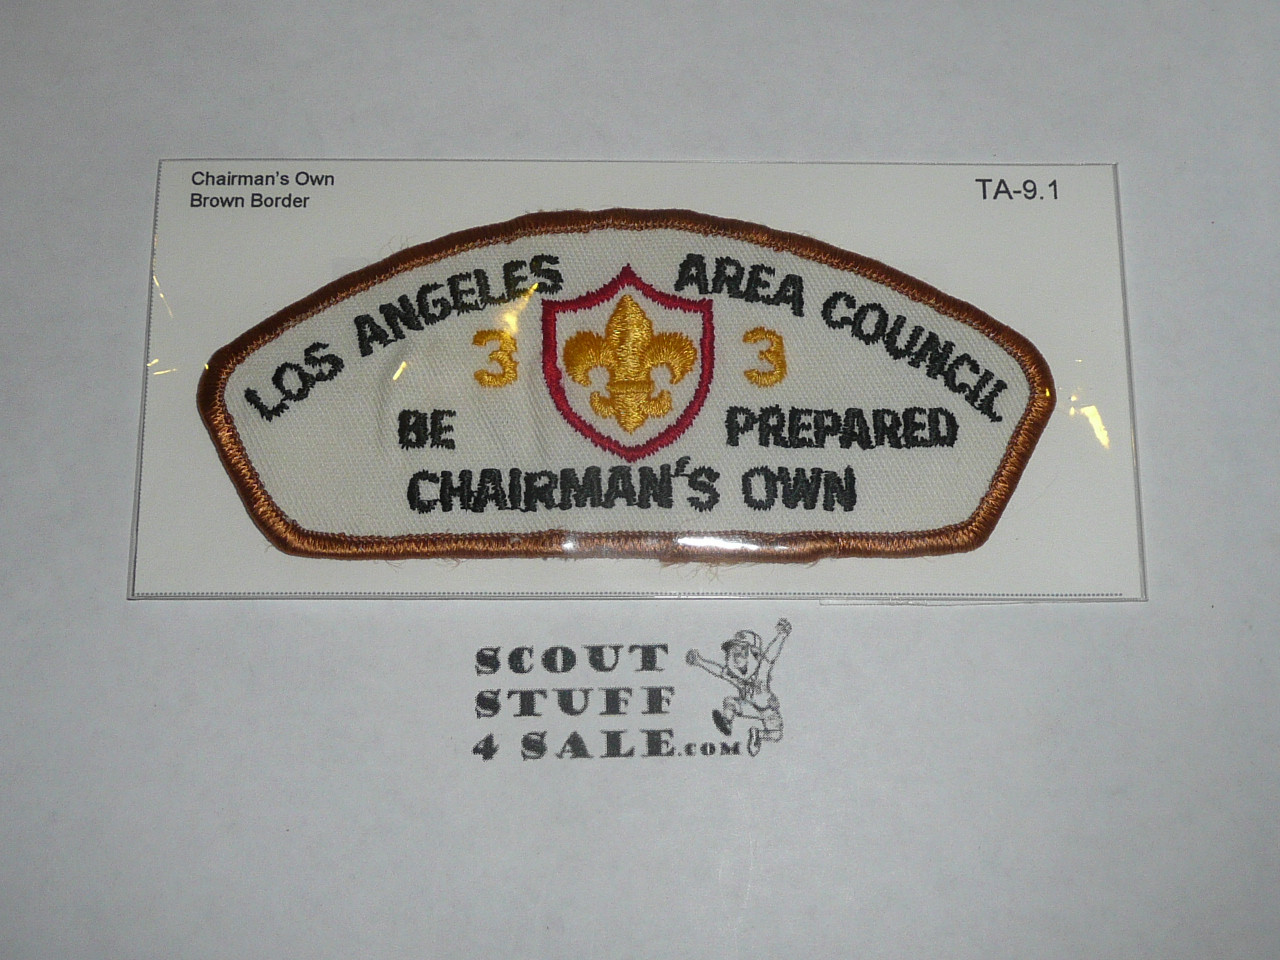 Los Angeles Area Council ta9:1 CSP